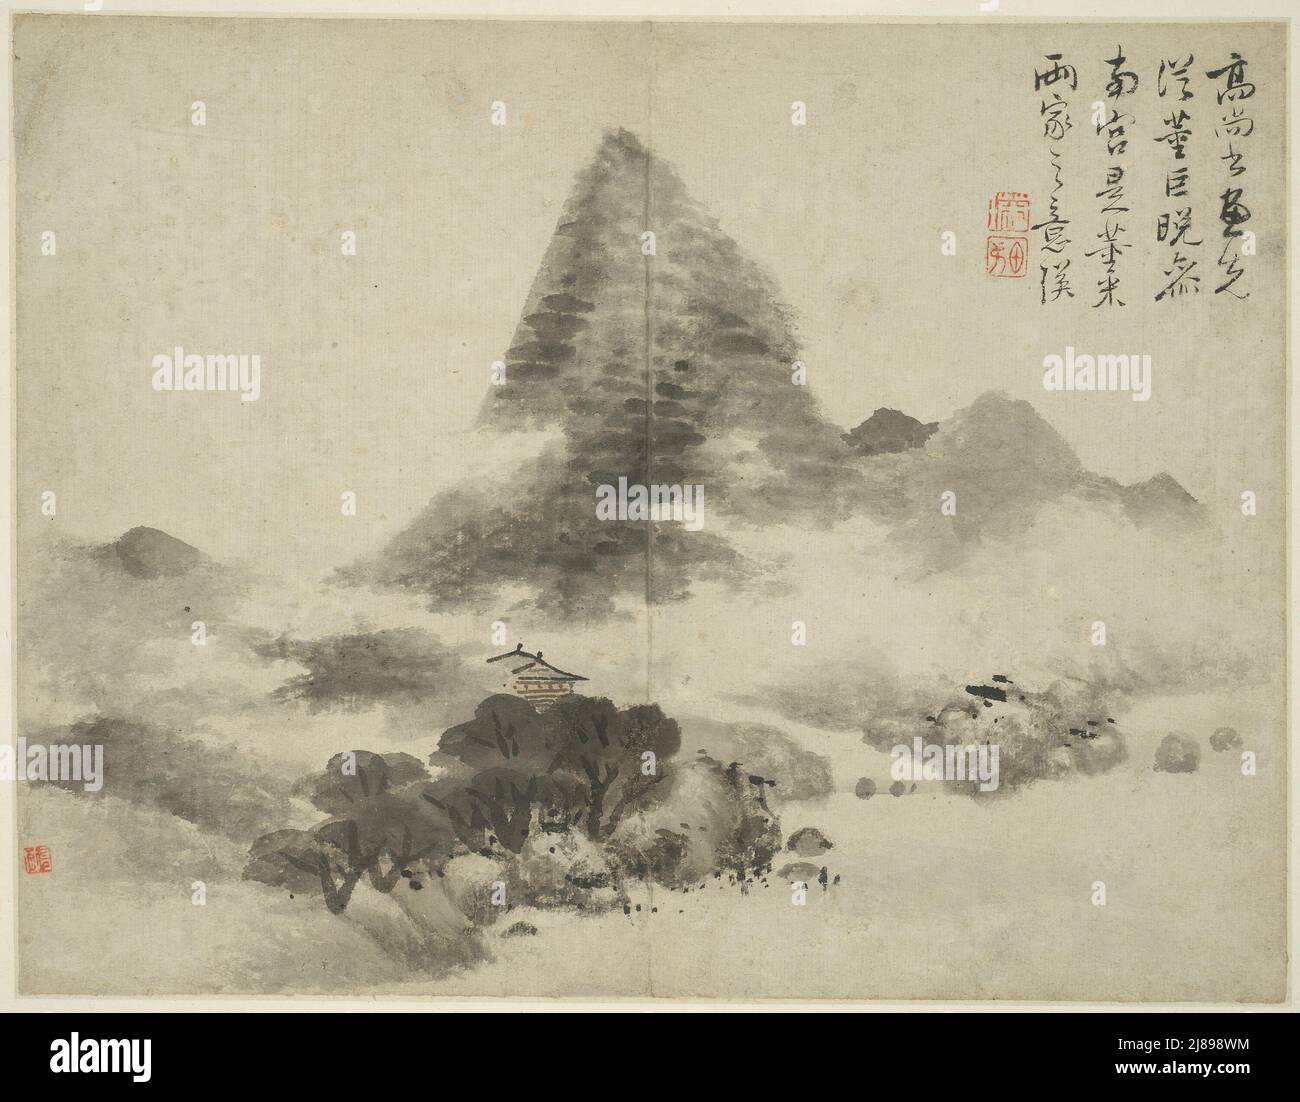 Paisaje al estilo de los antiguos maestros: Después de Gao Shangshu, siguiendo a Dong Yuan (activo 937-975) y Ju corrió, y más tarde en el estilo de Mi Fu (1051 -1107), China, dinastía Ming (1368-1644), 1642. Foto de stock